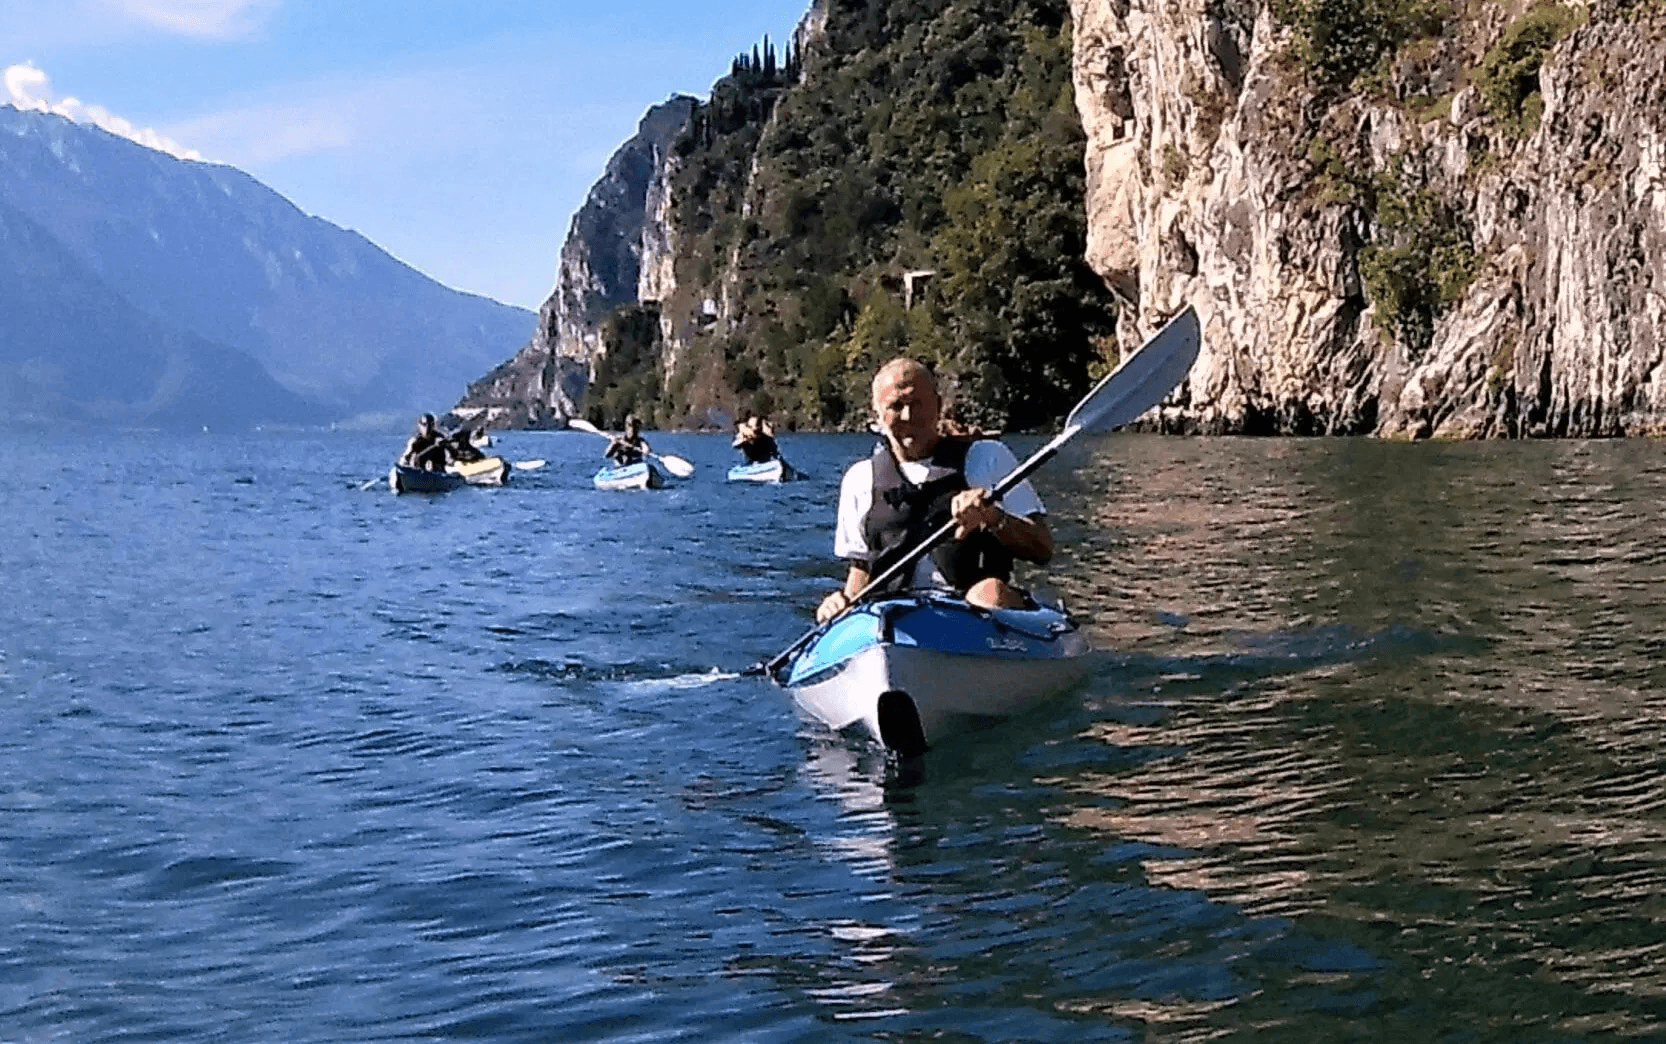 Turismo sul Lago di Como, una esperienza incantevole da condividere anche su facebook. E se si è in più persone, meglio!